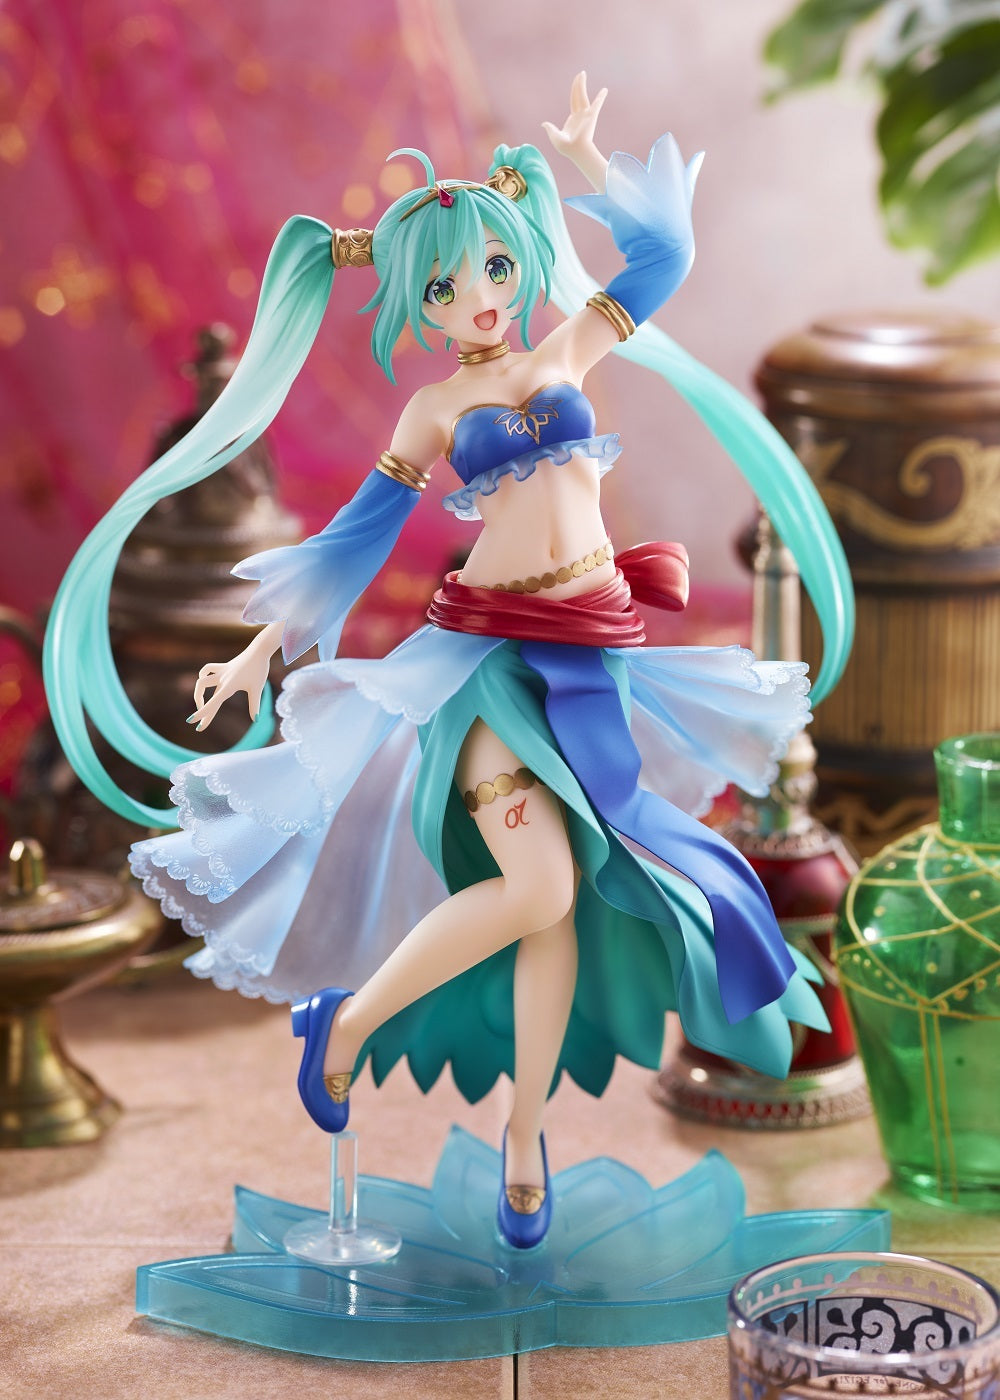 Taito Prize Figure: Vocaloid - Hatsune Miku Princesa Version Arabe Figura